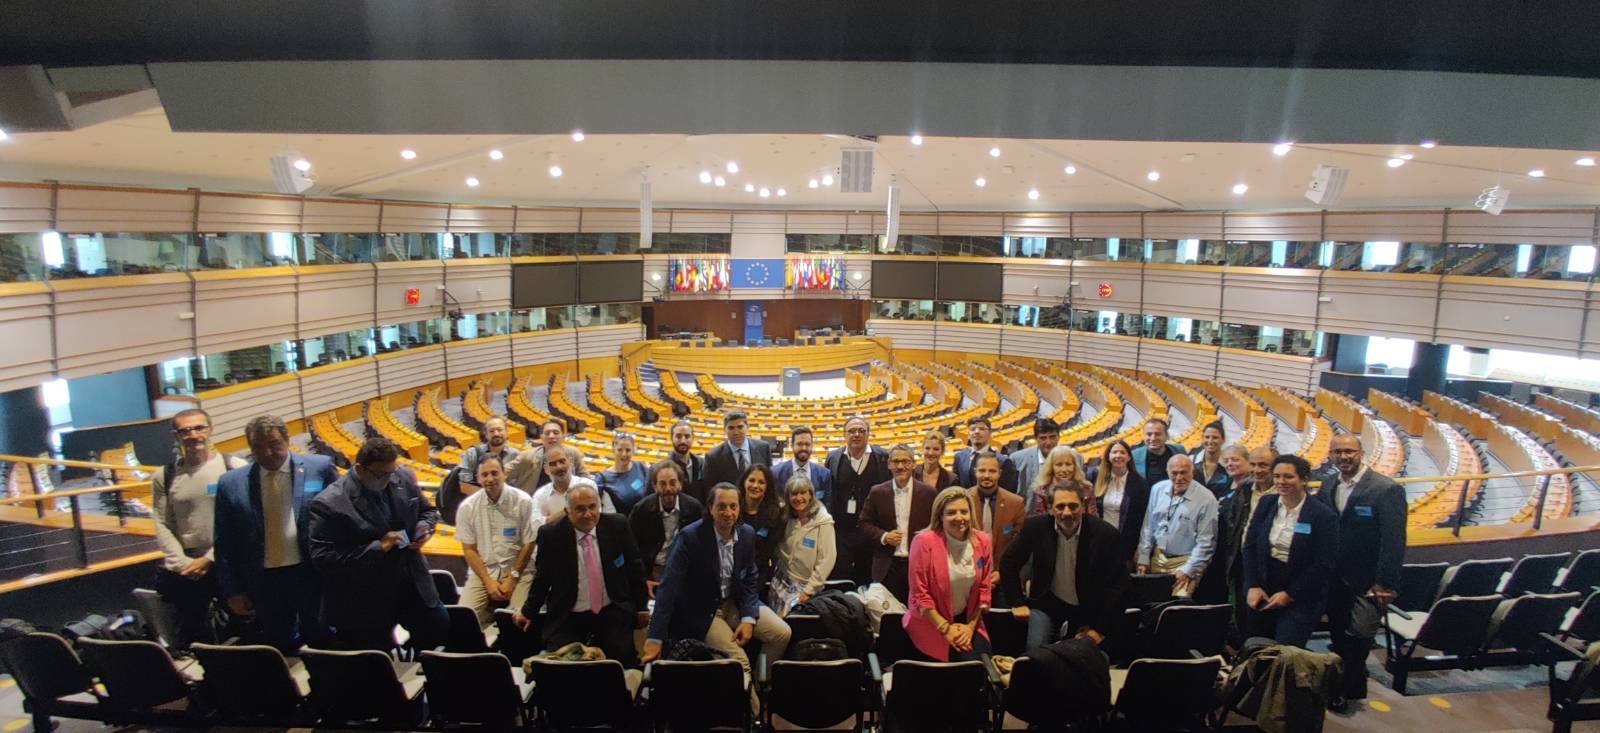 Π. Κόκκαλης: Τριάντα Έλληνες Πρεσβευτές του Ευρωπαϊκού Συμφώνου για το Κλίμα στις Βρυξέλλες